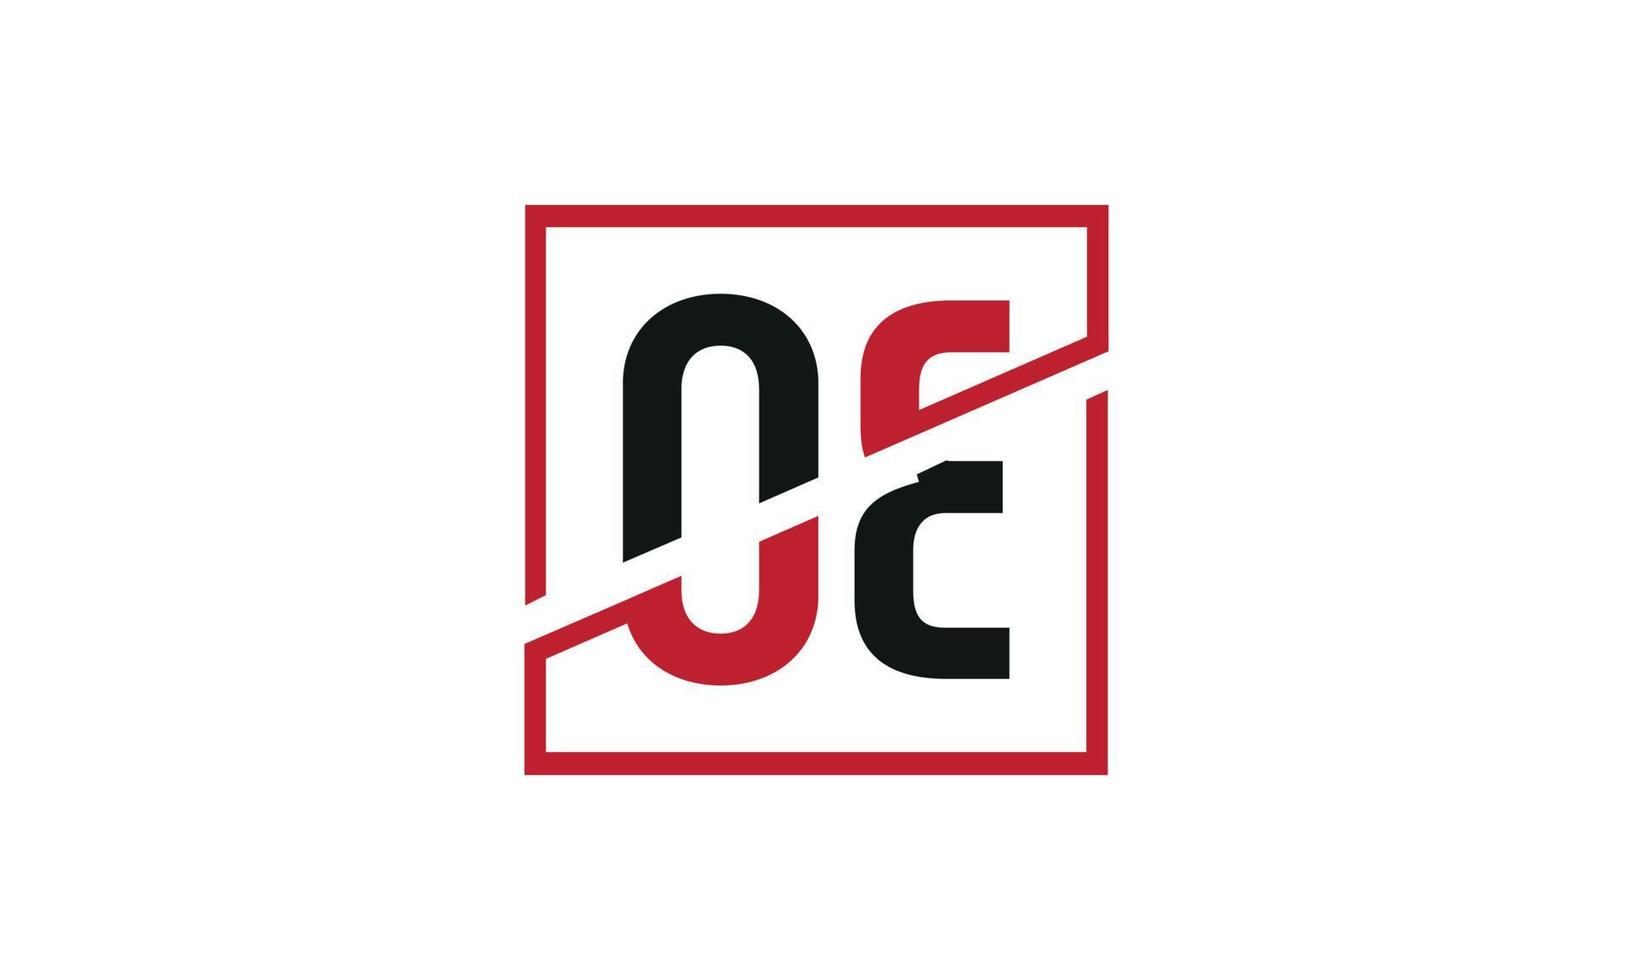 lettre oe logo pro fichier vectoriel vecteur pro